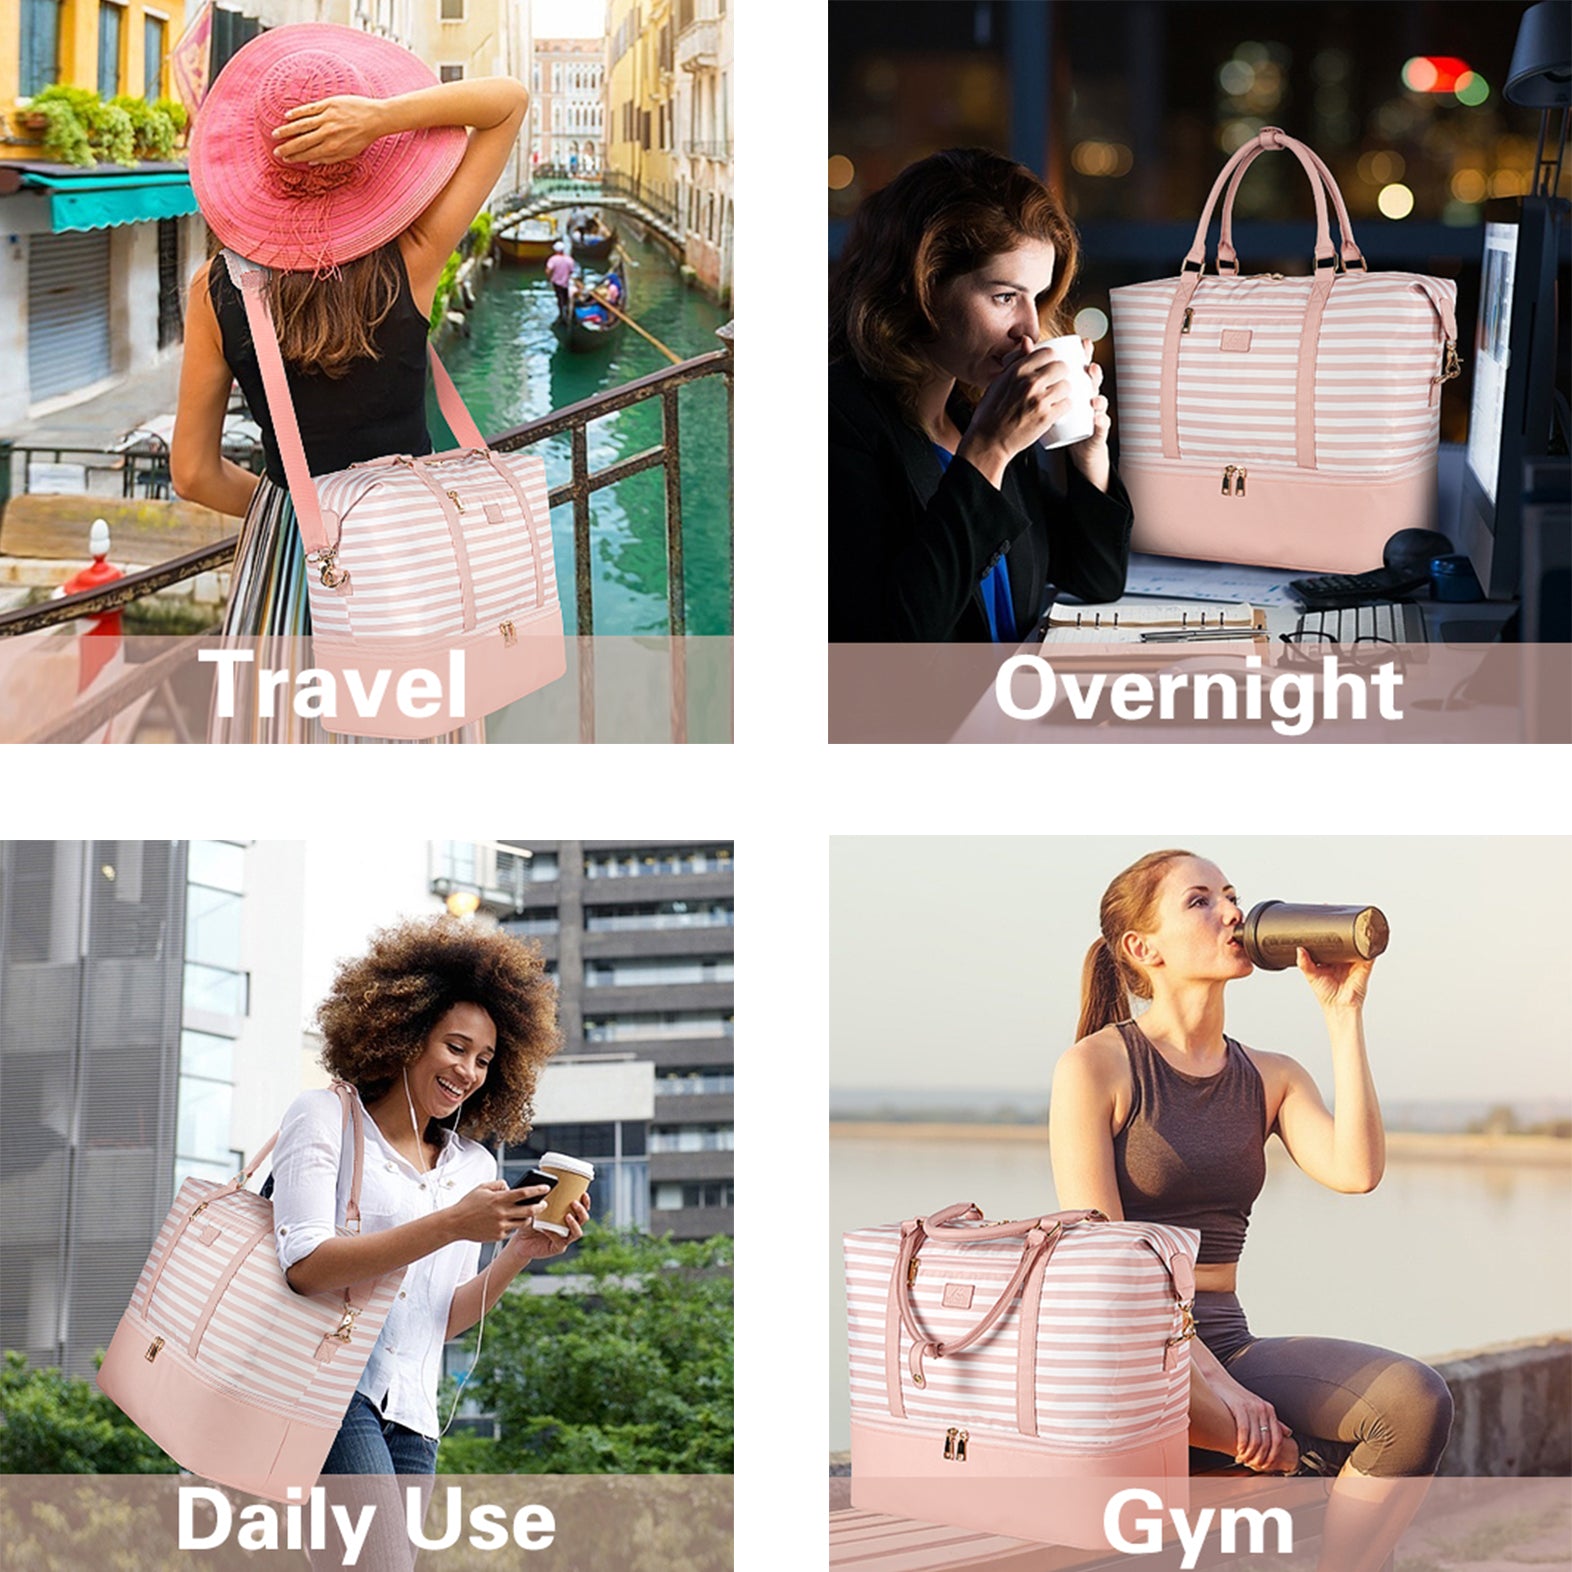 Matein Pink Weekender Bag for Women-large weekender bag